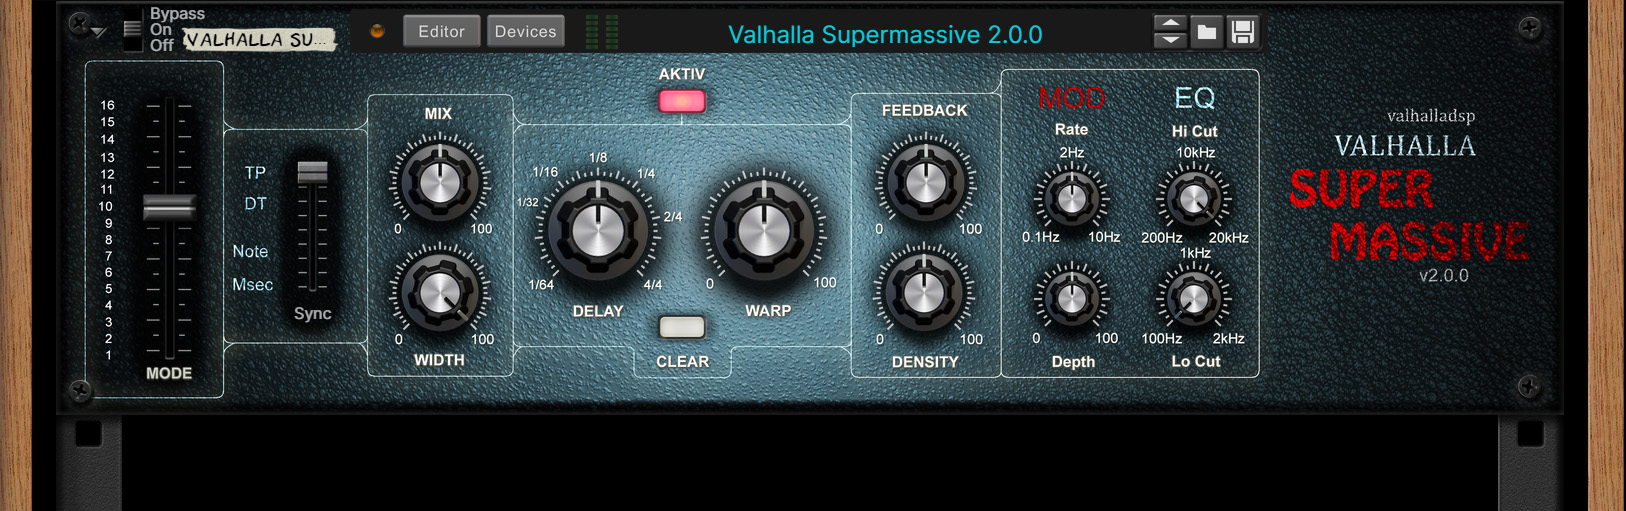 Valhalla Super Massive 2.0.0.jpg